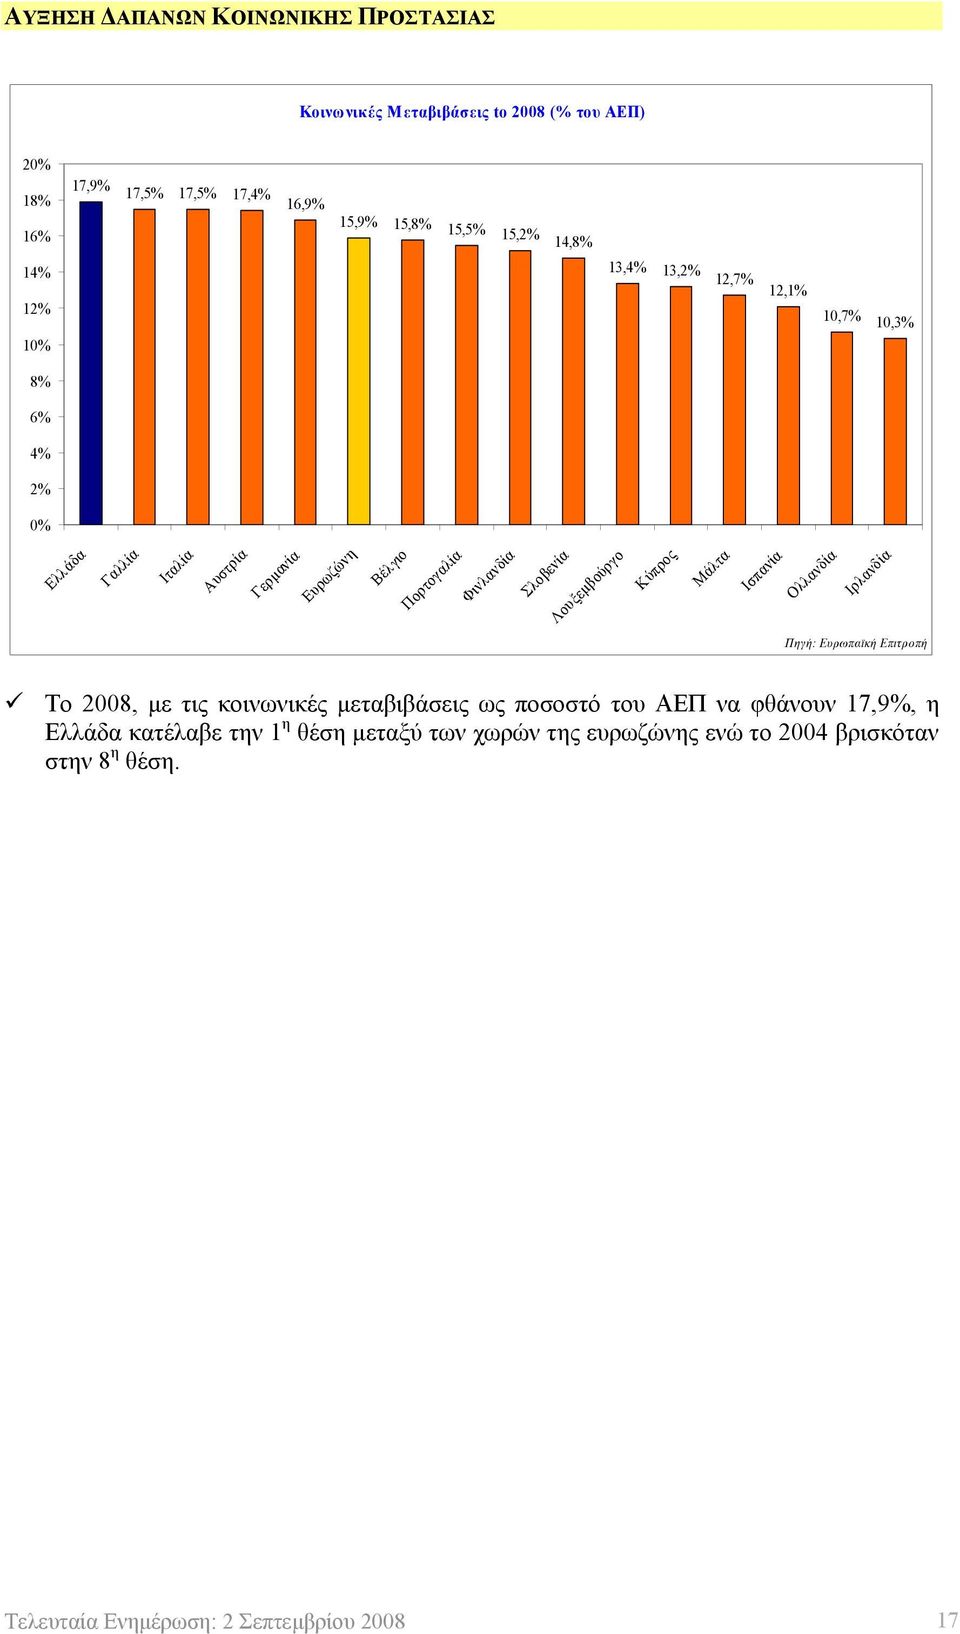 Σλοβενία Λουξεμβούργο Κύπρος Μάλτα Ισπανία Ολλανδία Ιρλανδία Πηγή: Ευρωπαϊκή Επιτροπή Το 2008, με τις κοινωνικές μεταβιβάσεις ως ποσοστό του ΑΕΠ να